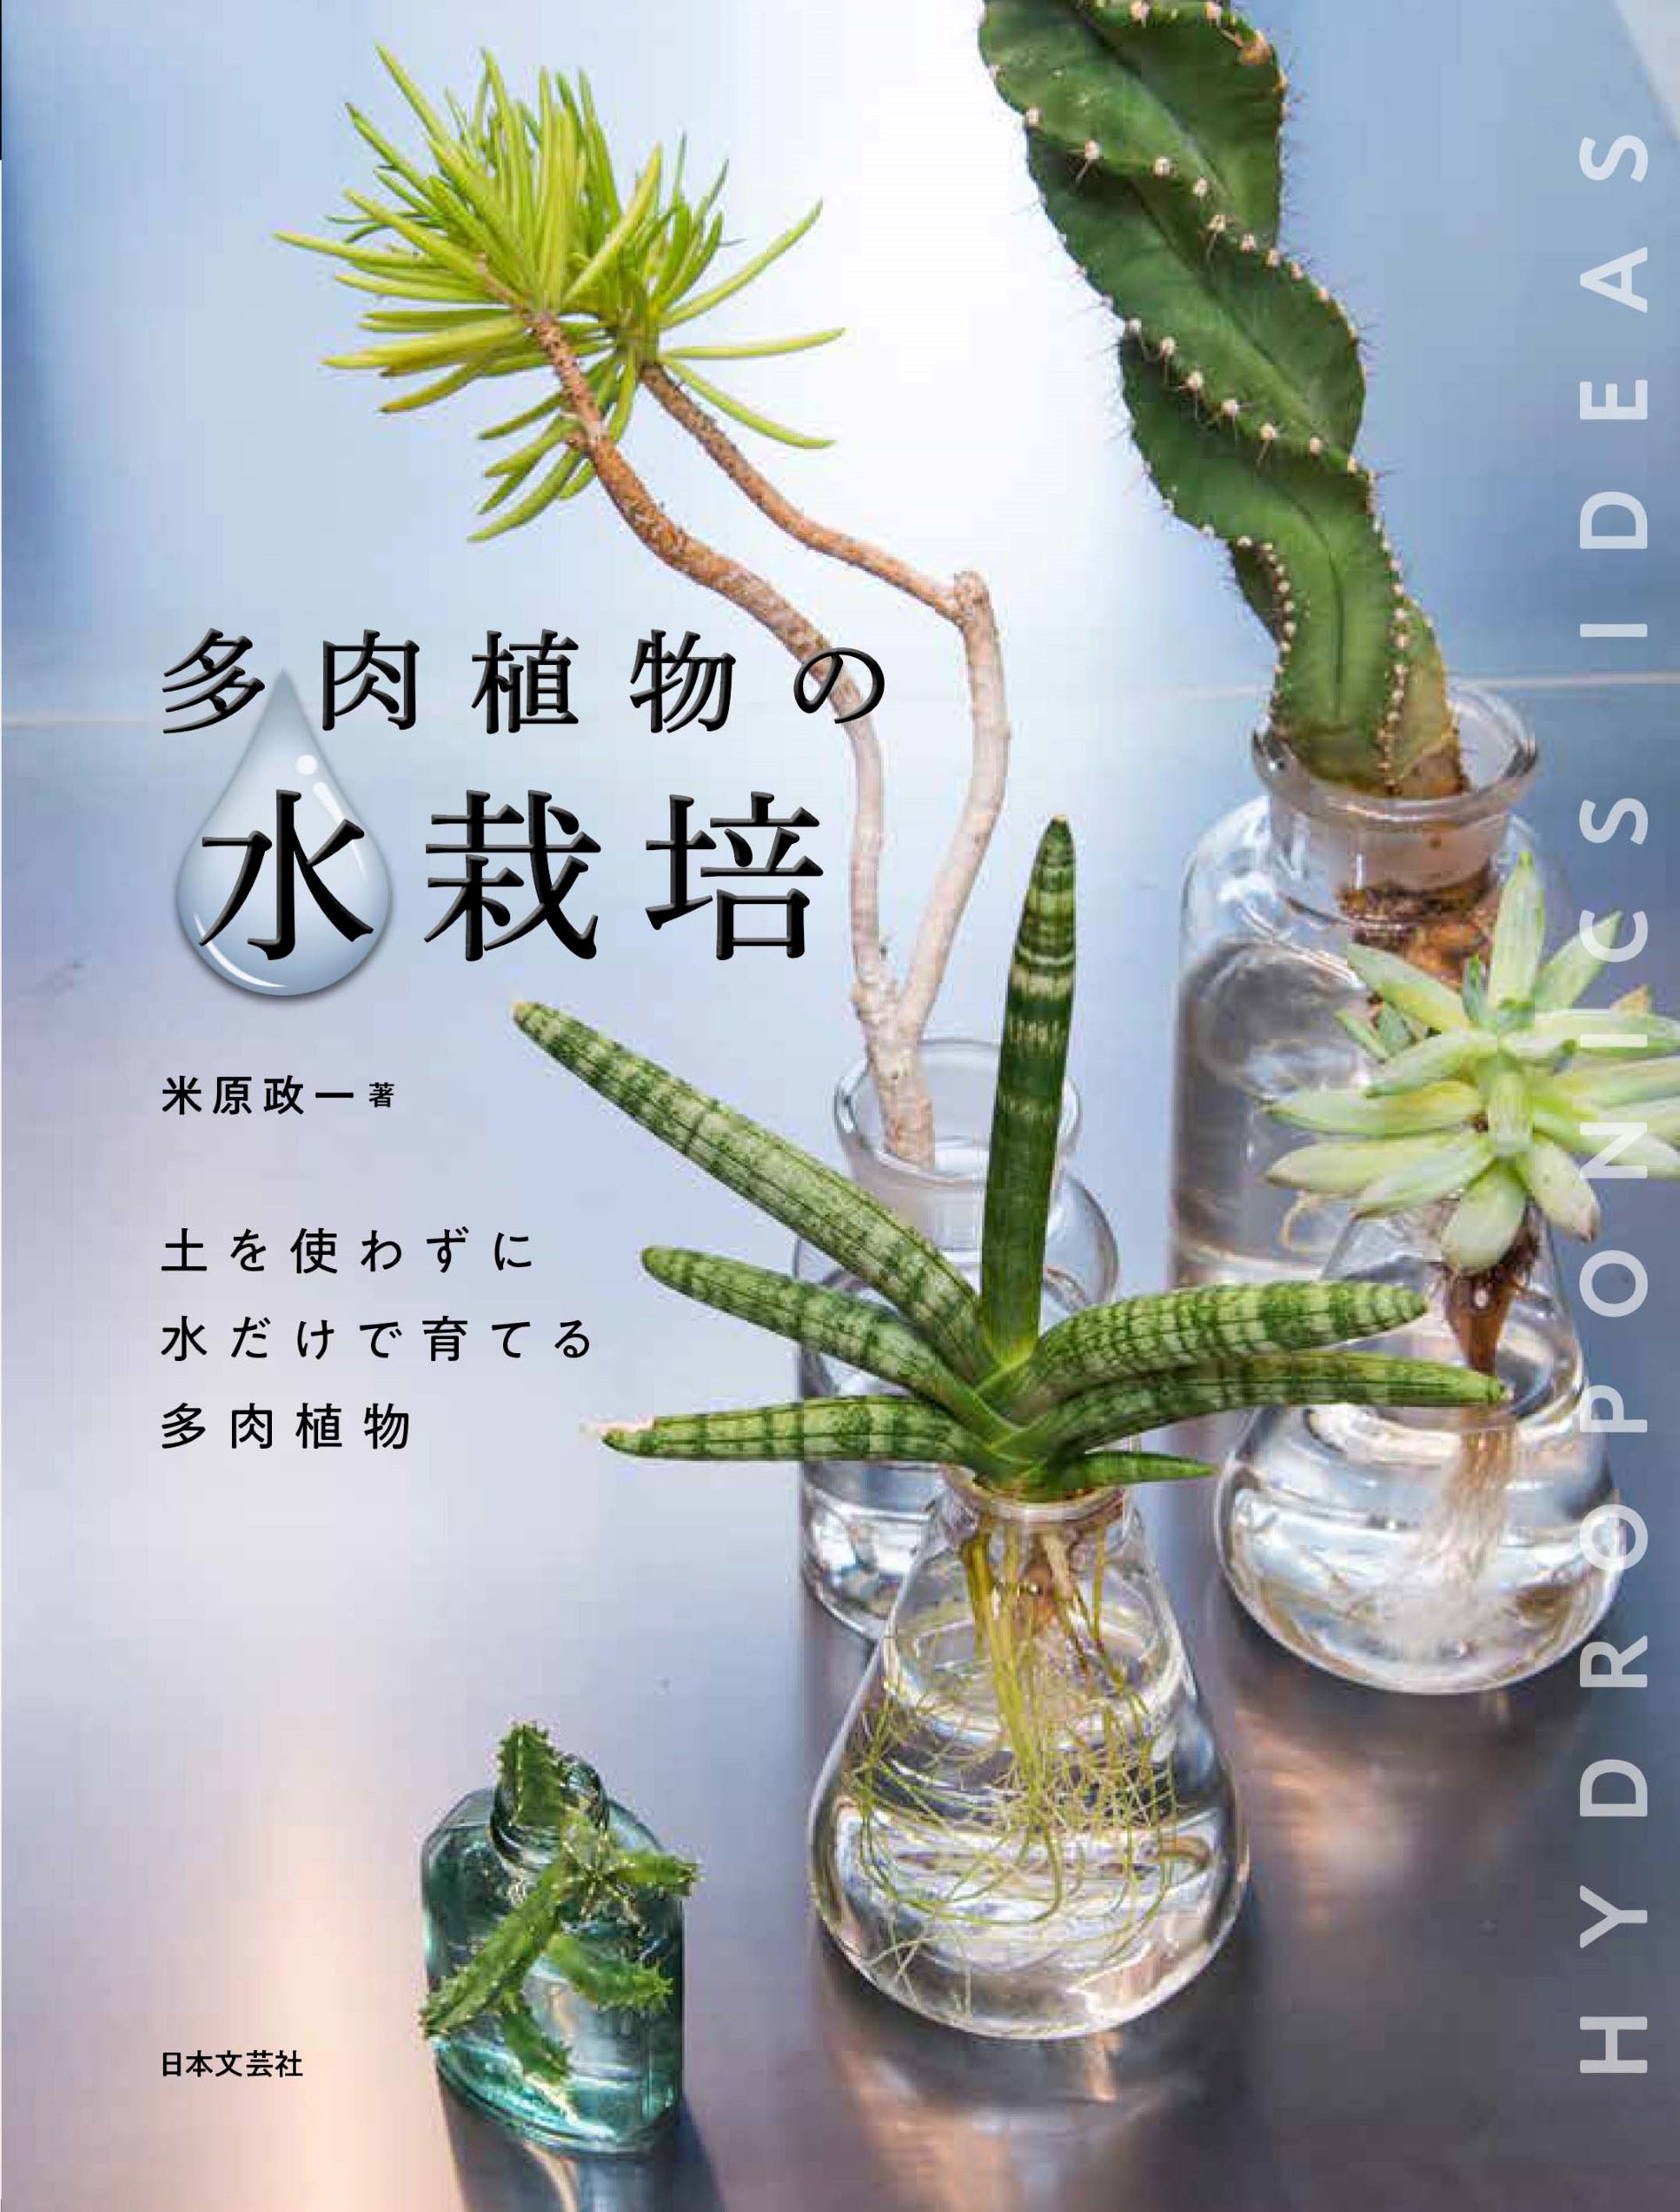 土を使わず水だけで育てる新しい栽培スタイル 多肉植物の水栽培 9月29日発売 株式会社日本文芸社のプレスリリース